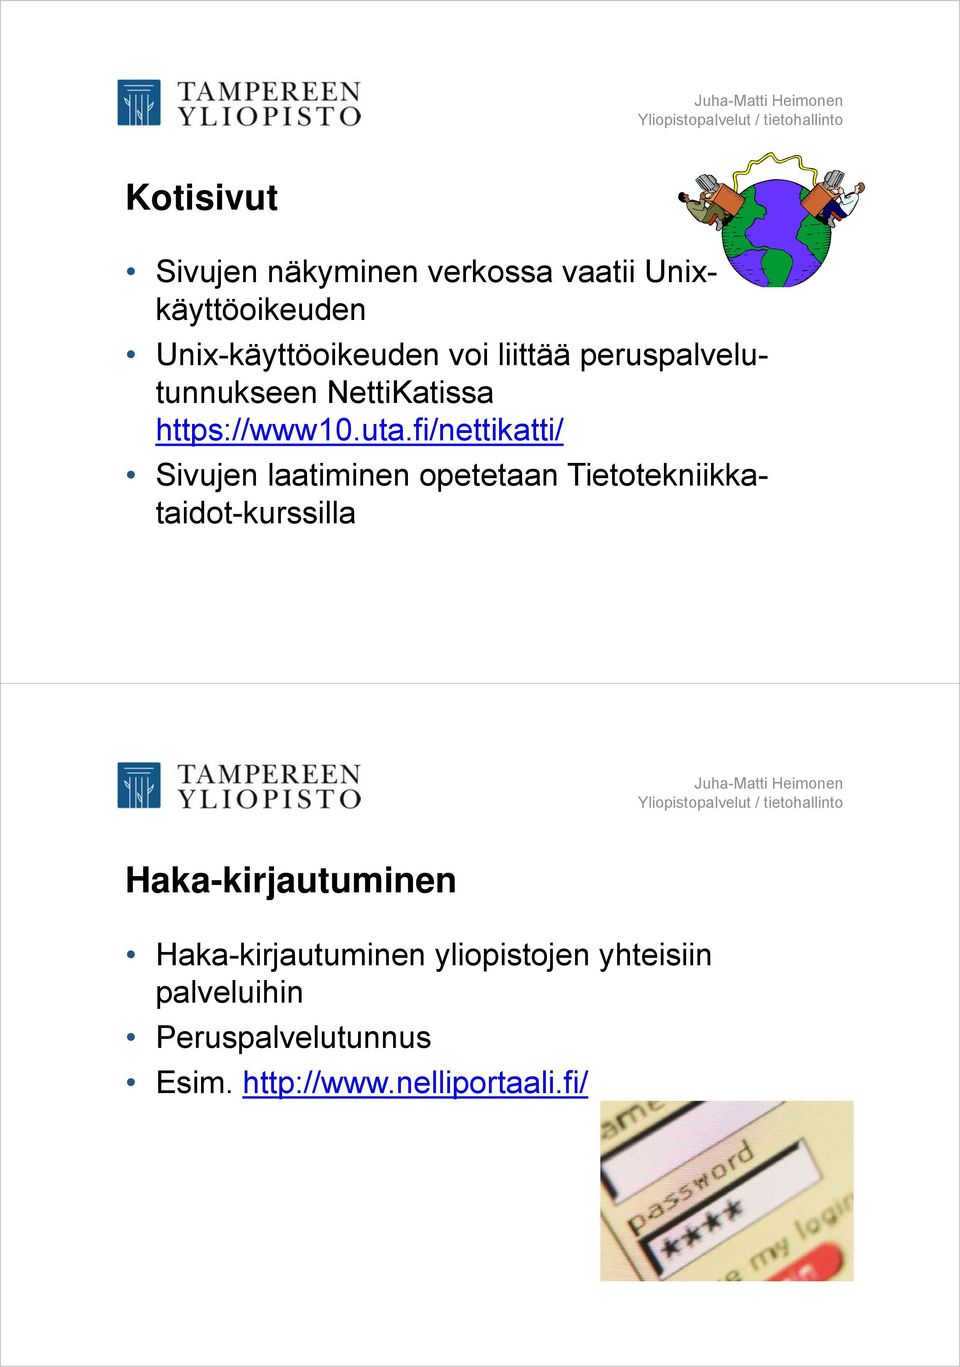 fi/nettikatti/ Sivujen laatiminen opetetaan Tietotekniikkataidot-kurssilla